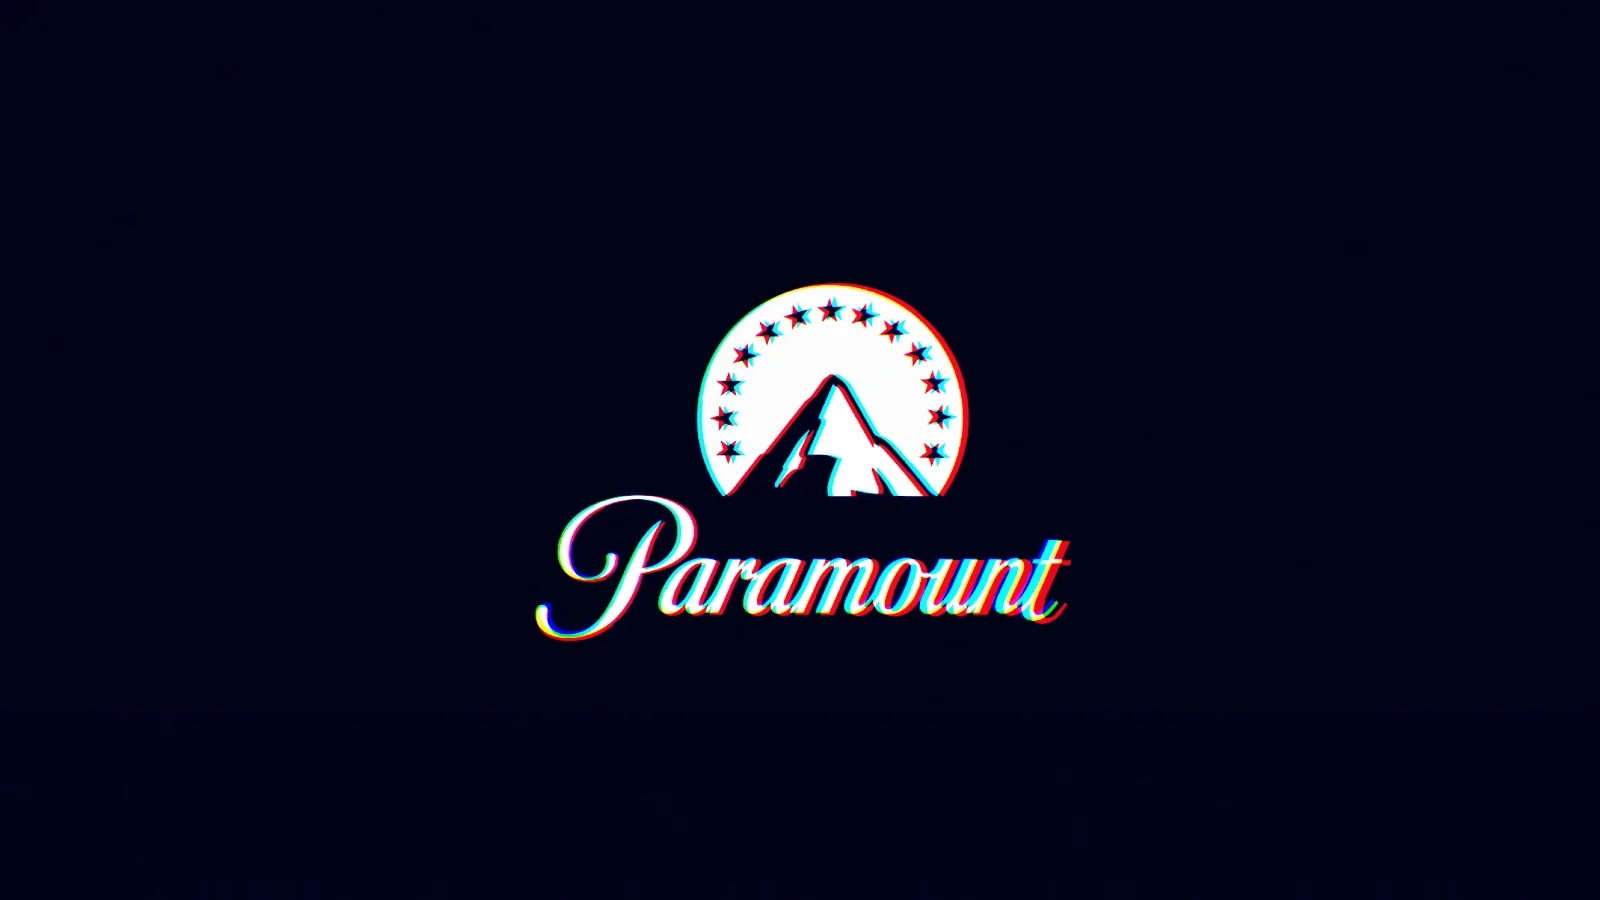 Paramount_headpic